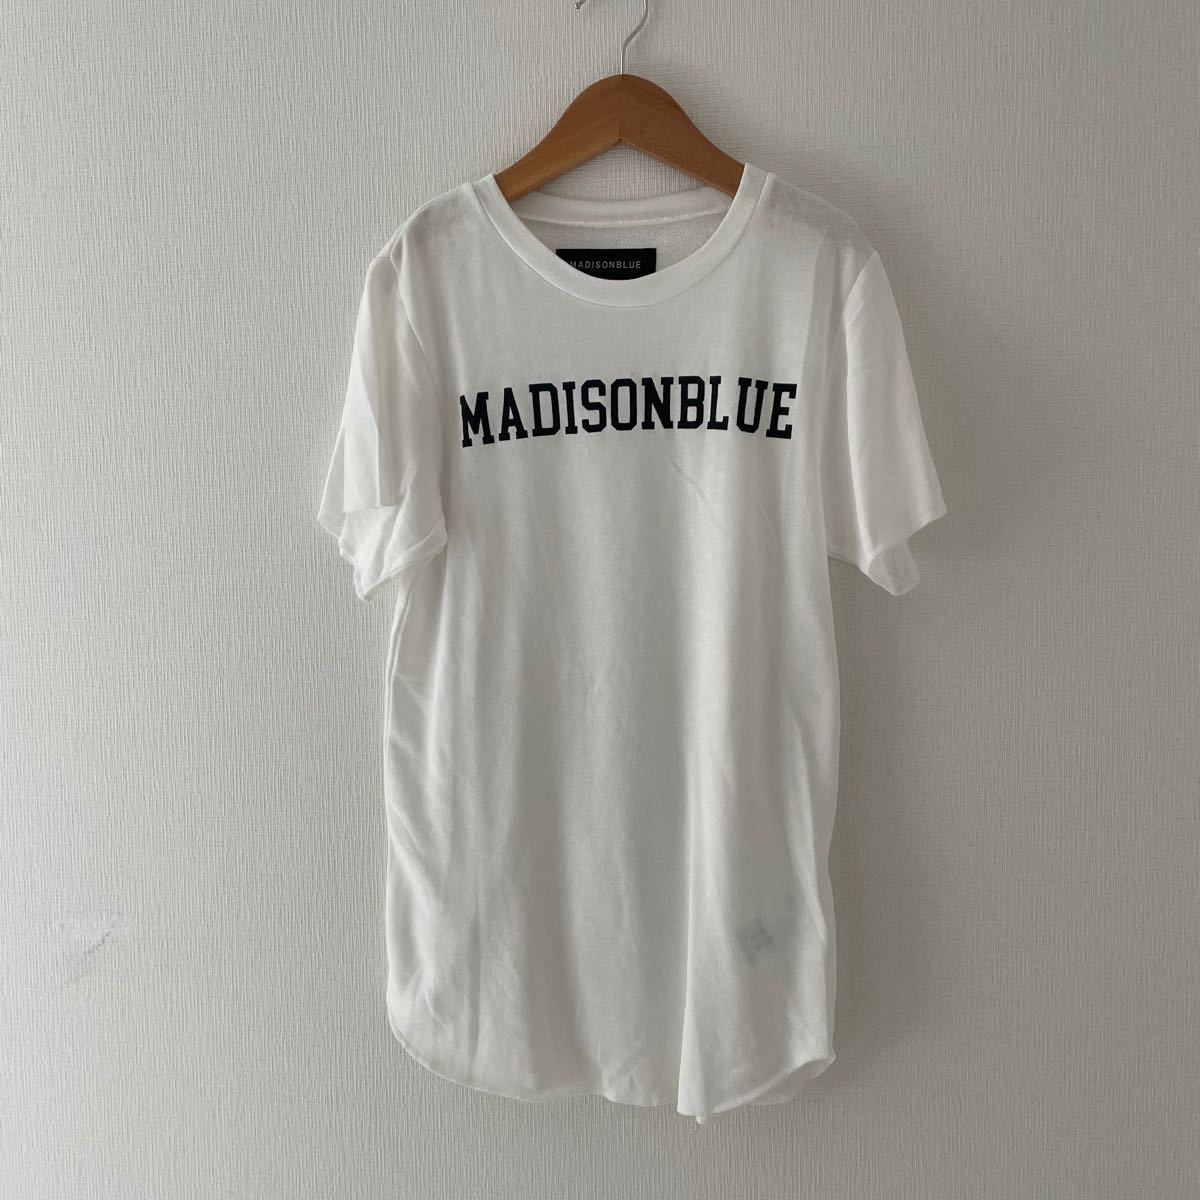 有名なブランド マディソンブルー Tシャツ comunidadaledar.org